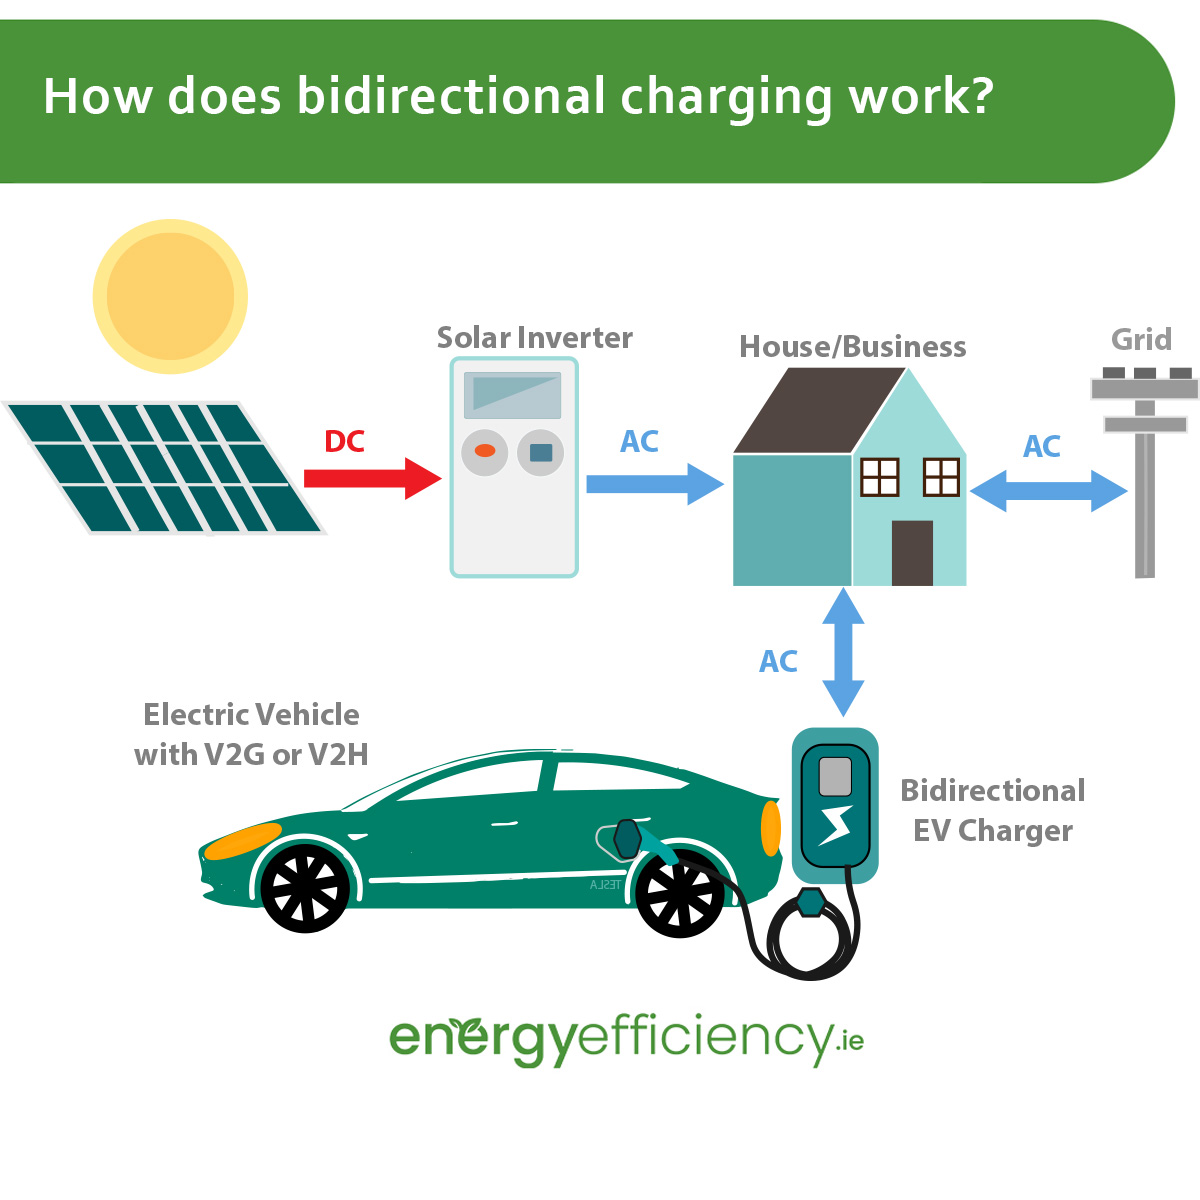 How bidirectional charging work